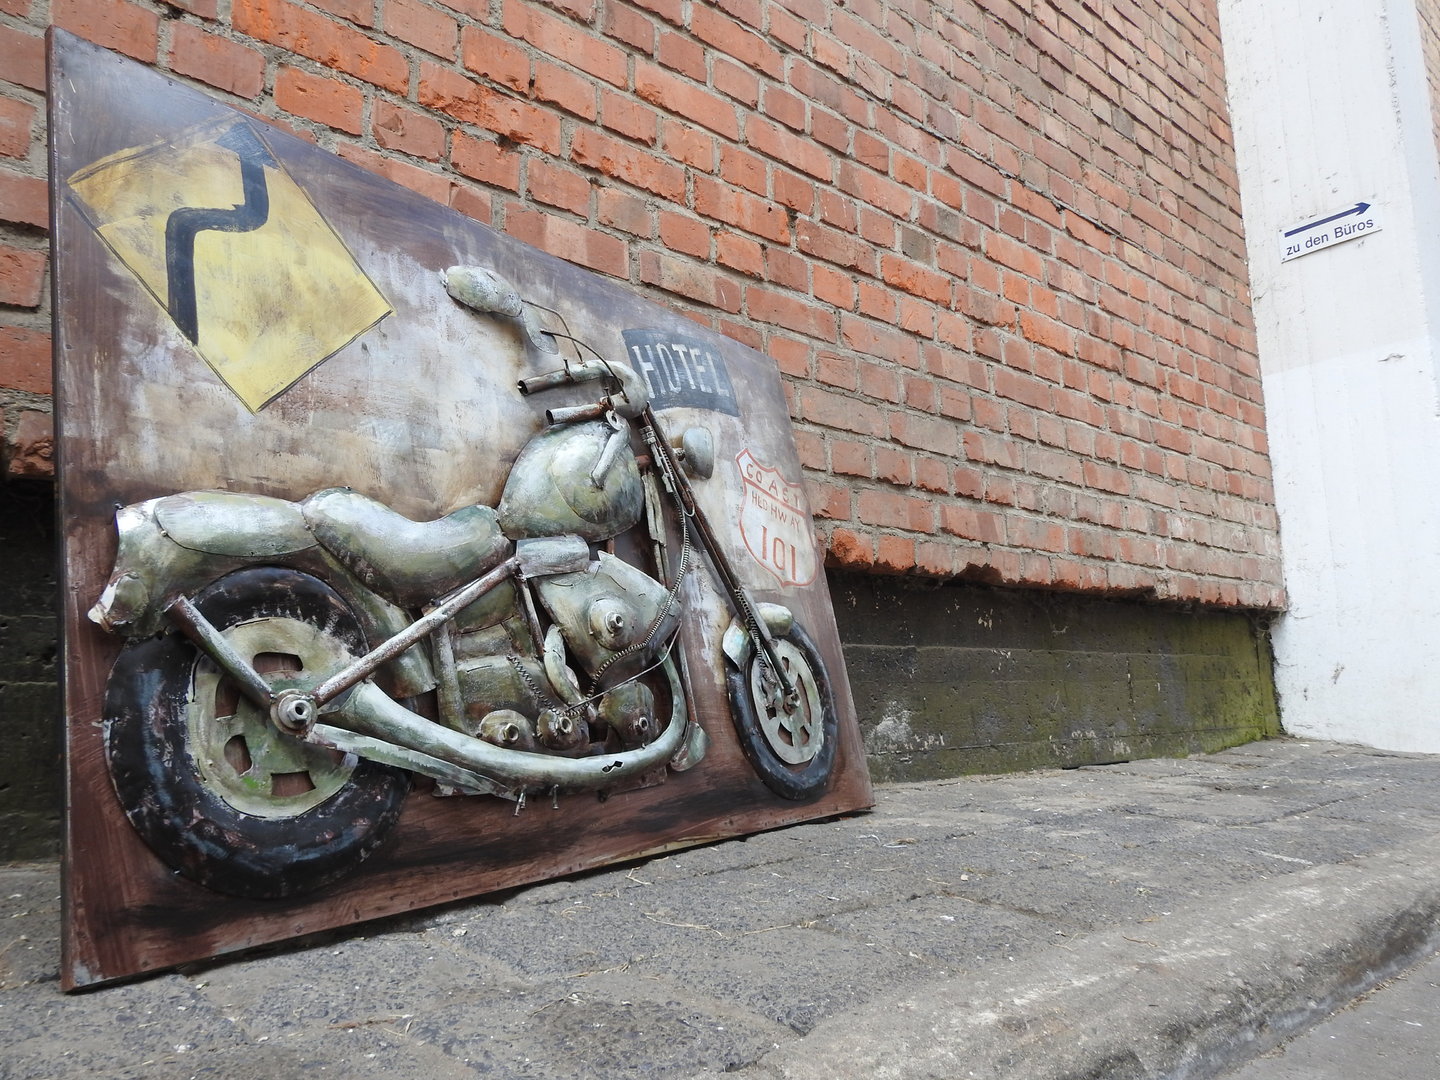 Moto Harley MetallBild 3D Route 66 Motorrad Metall Bild Relief Handarbeit 388 